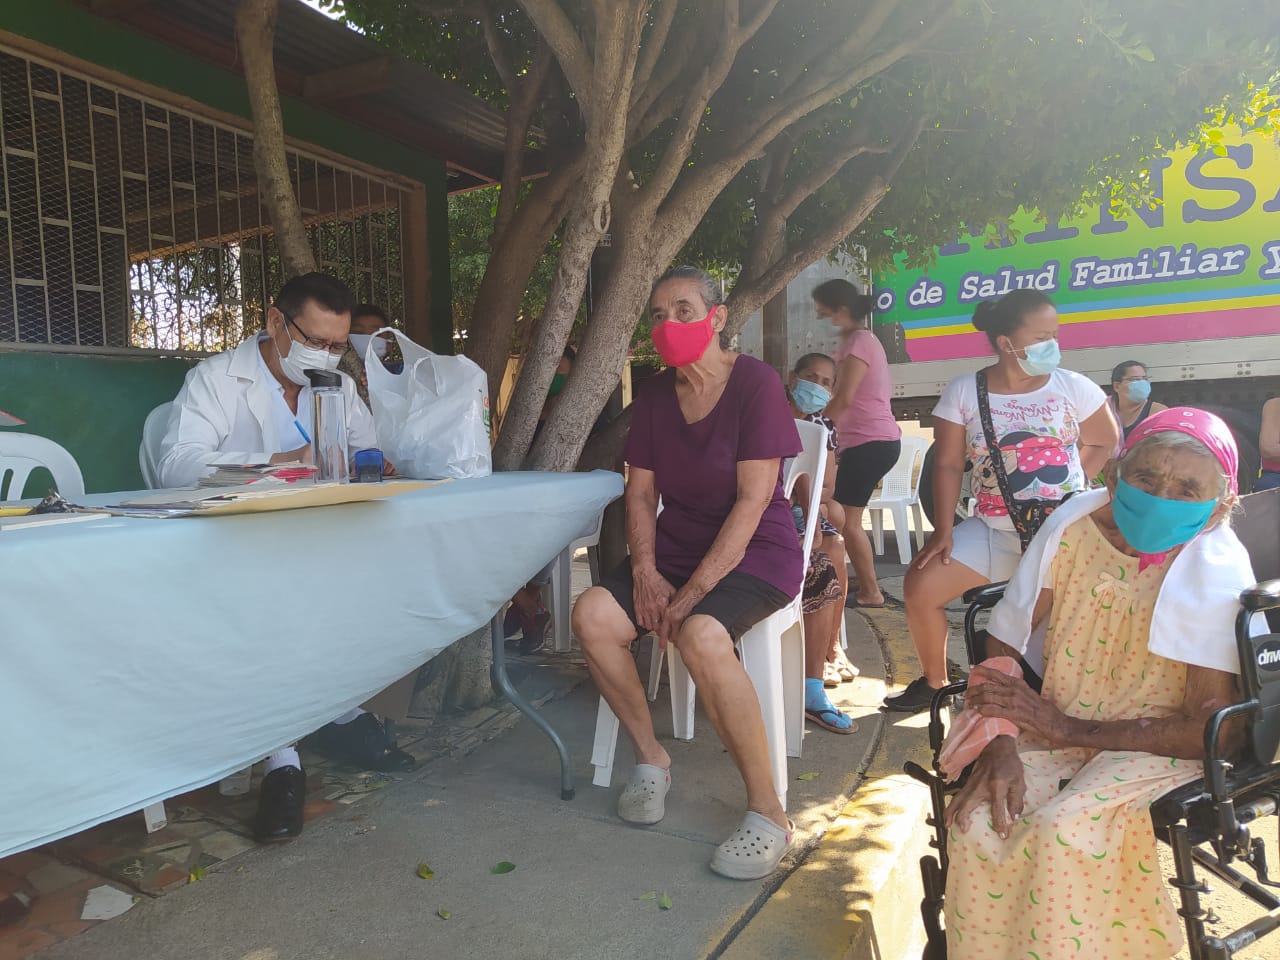 Feria de Salud en populosos barrios capitalinos Managua. Por Libeth González/Radio La Primerísima